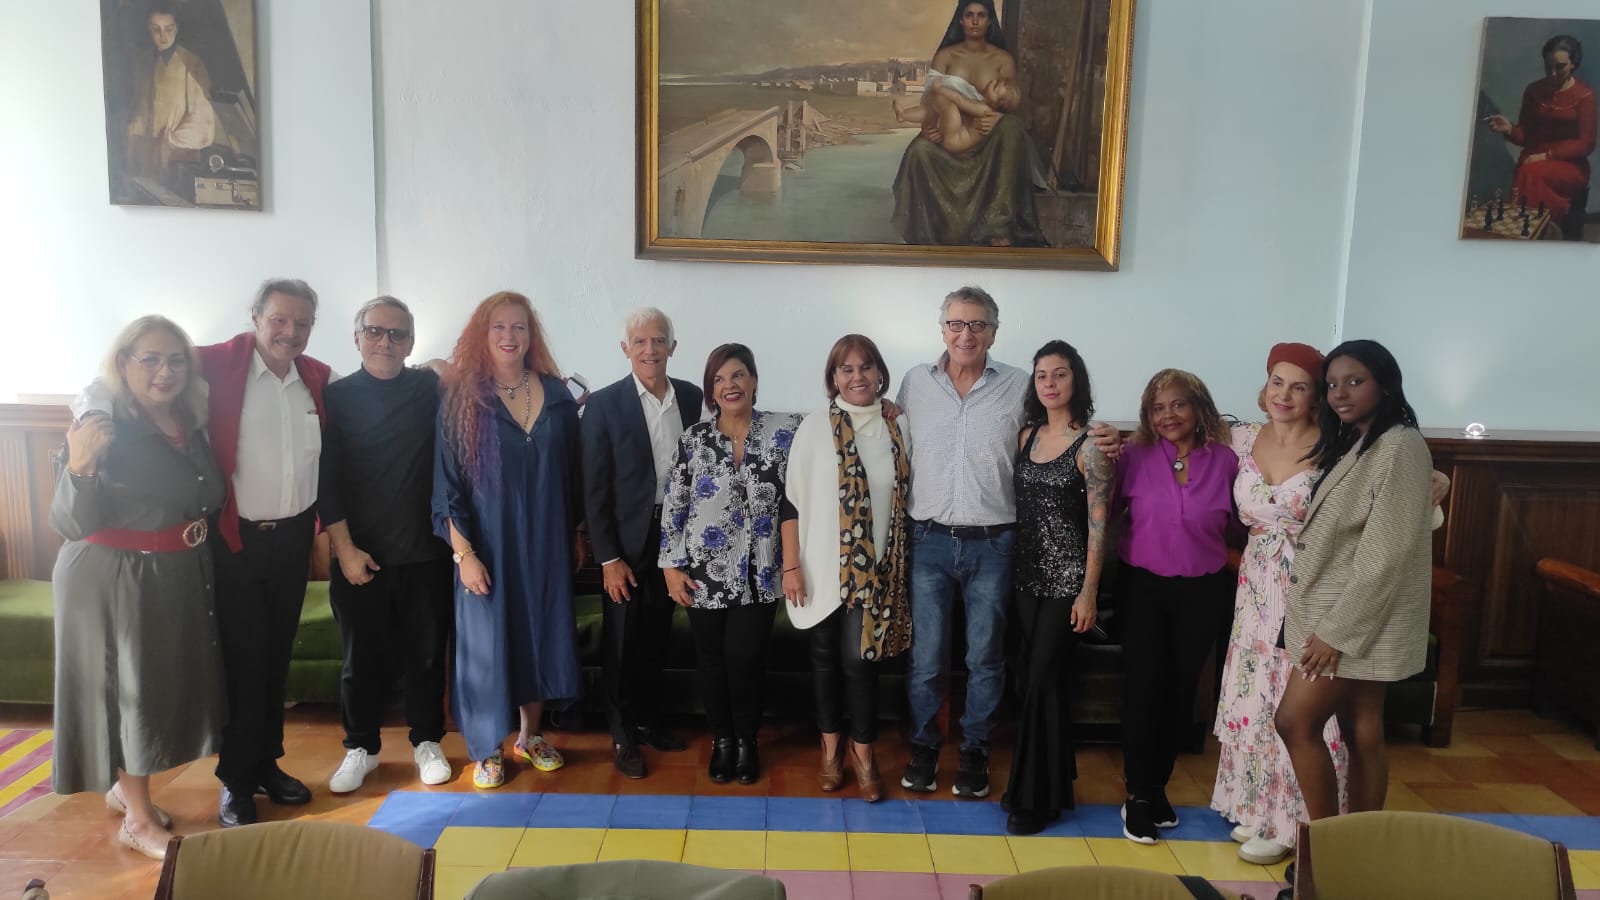 Salerno: Biennale al via, curatore Gorga “Pronta convenzione culturale con Colombia”